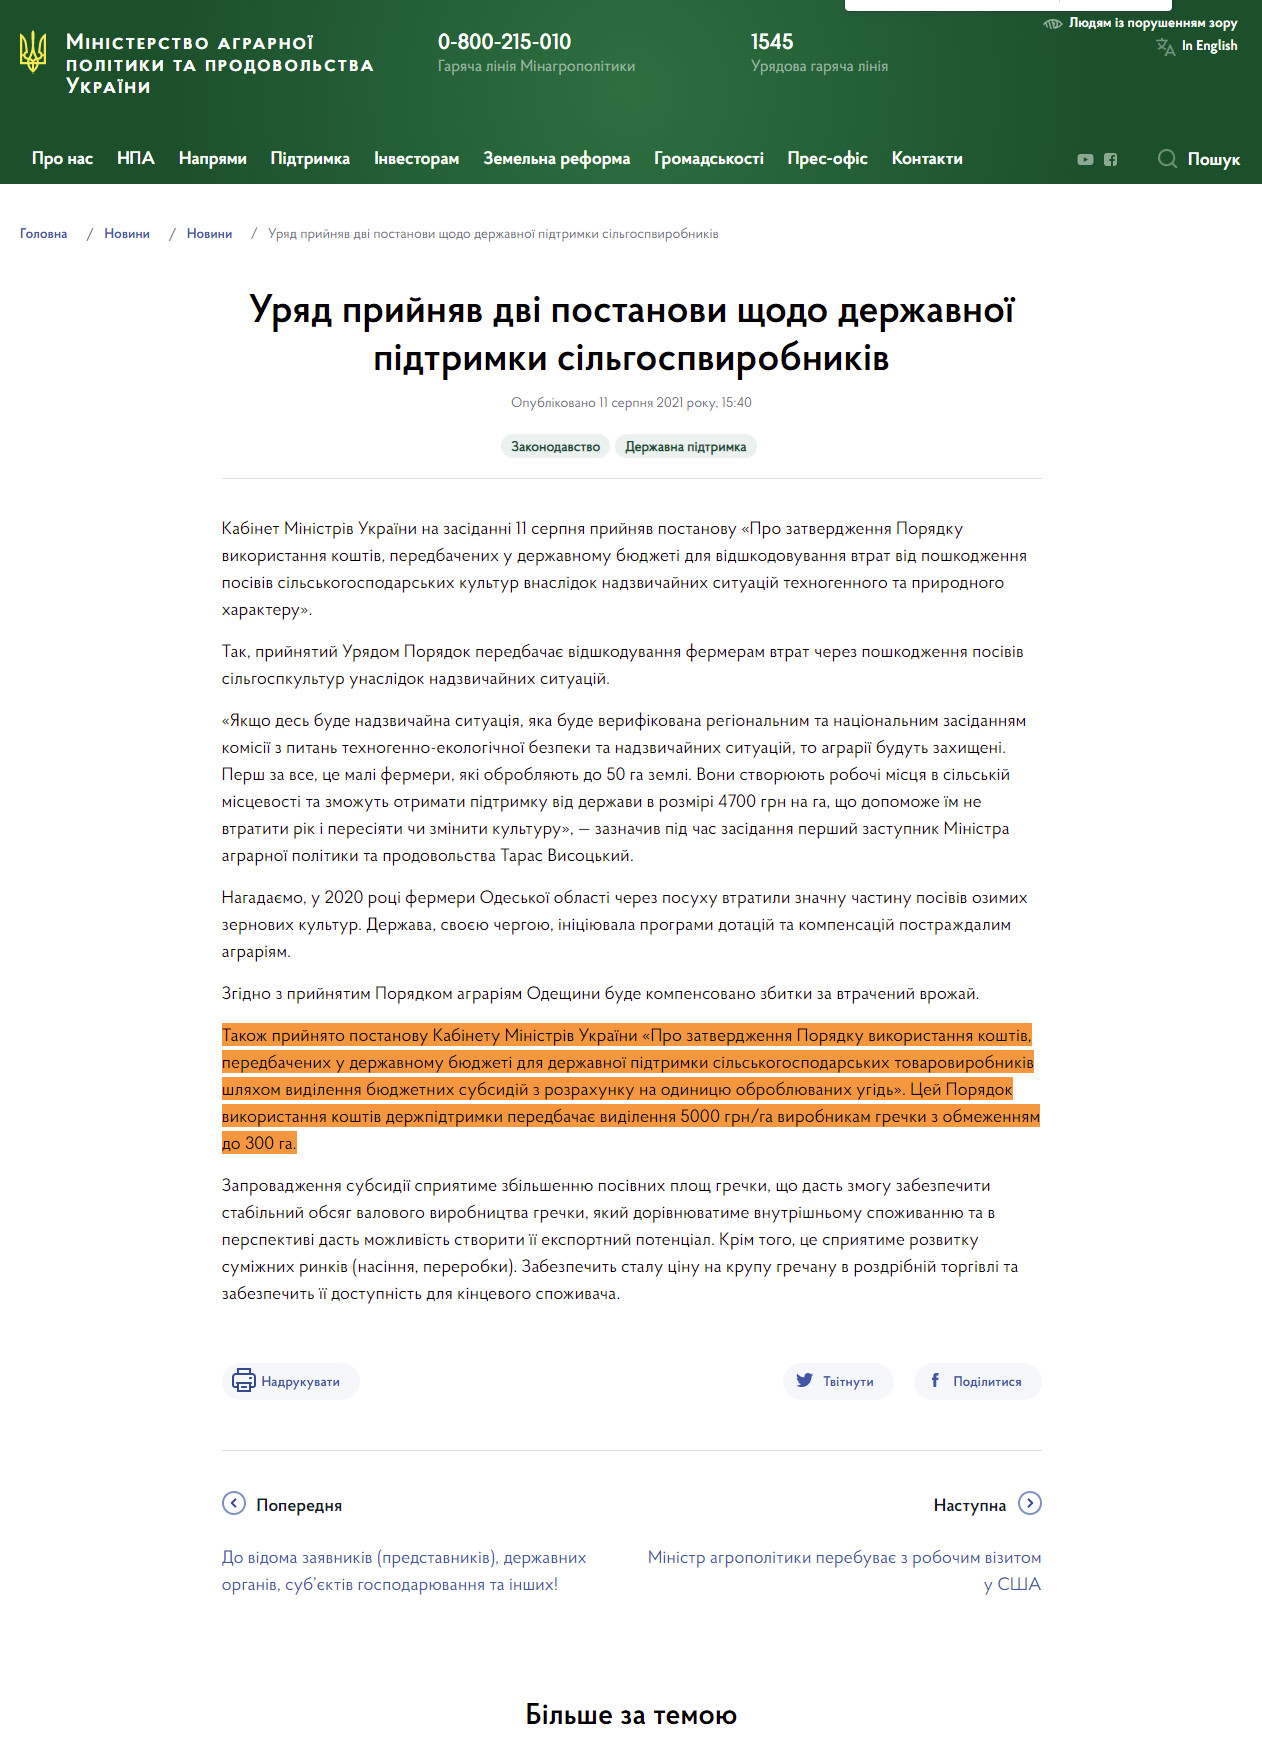 https://minagro.gov.ua/ua/news/uryad-pidtrimav-dvi-postanovi-shchodo-derzhavnoyi-pidtrimki-silgospvirobnikiv